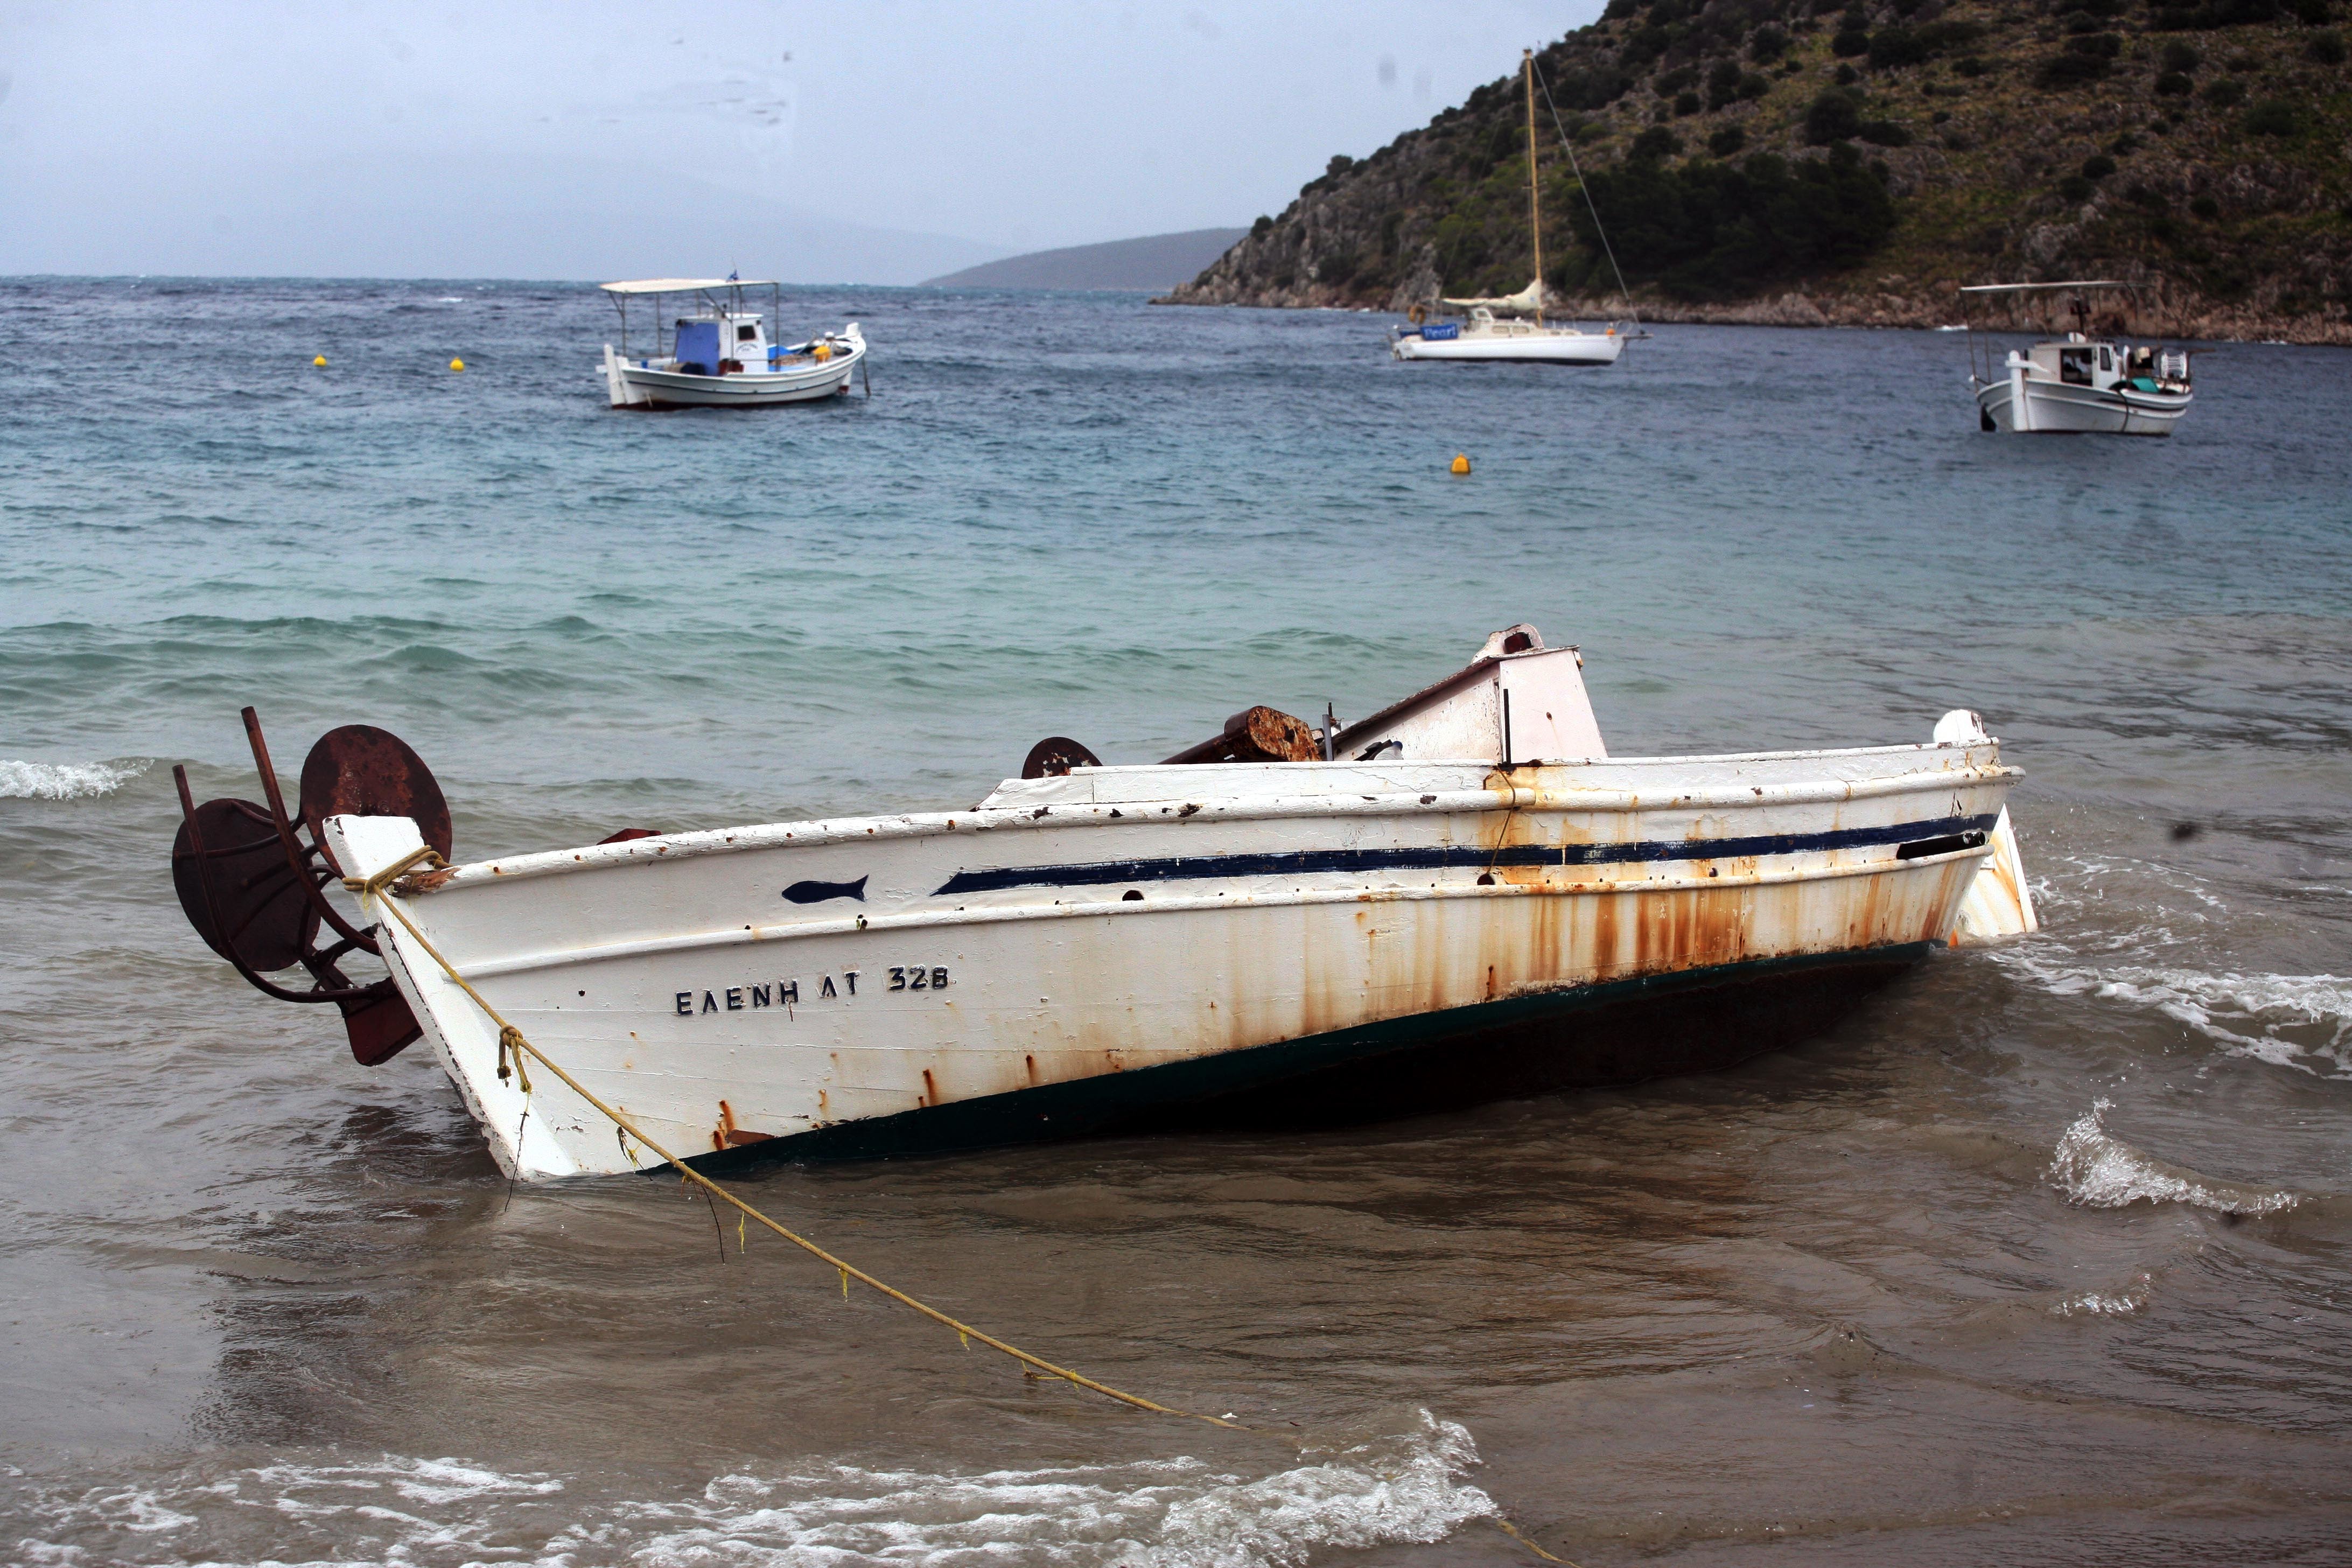 Σάτυρος παρέσυρε παιδιά σε βάρκα για να ασελγήσει σε βάρος τους